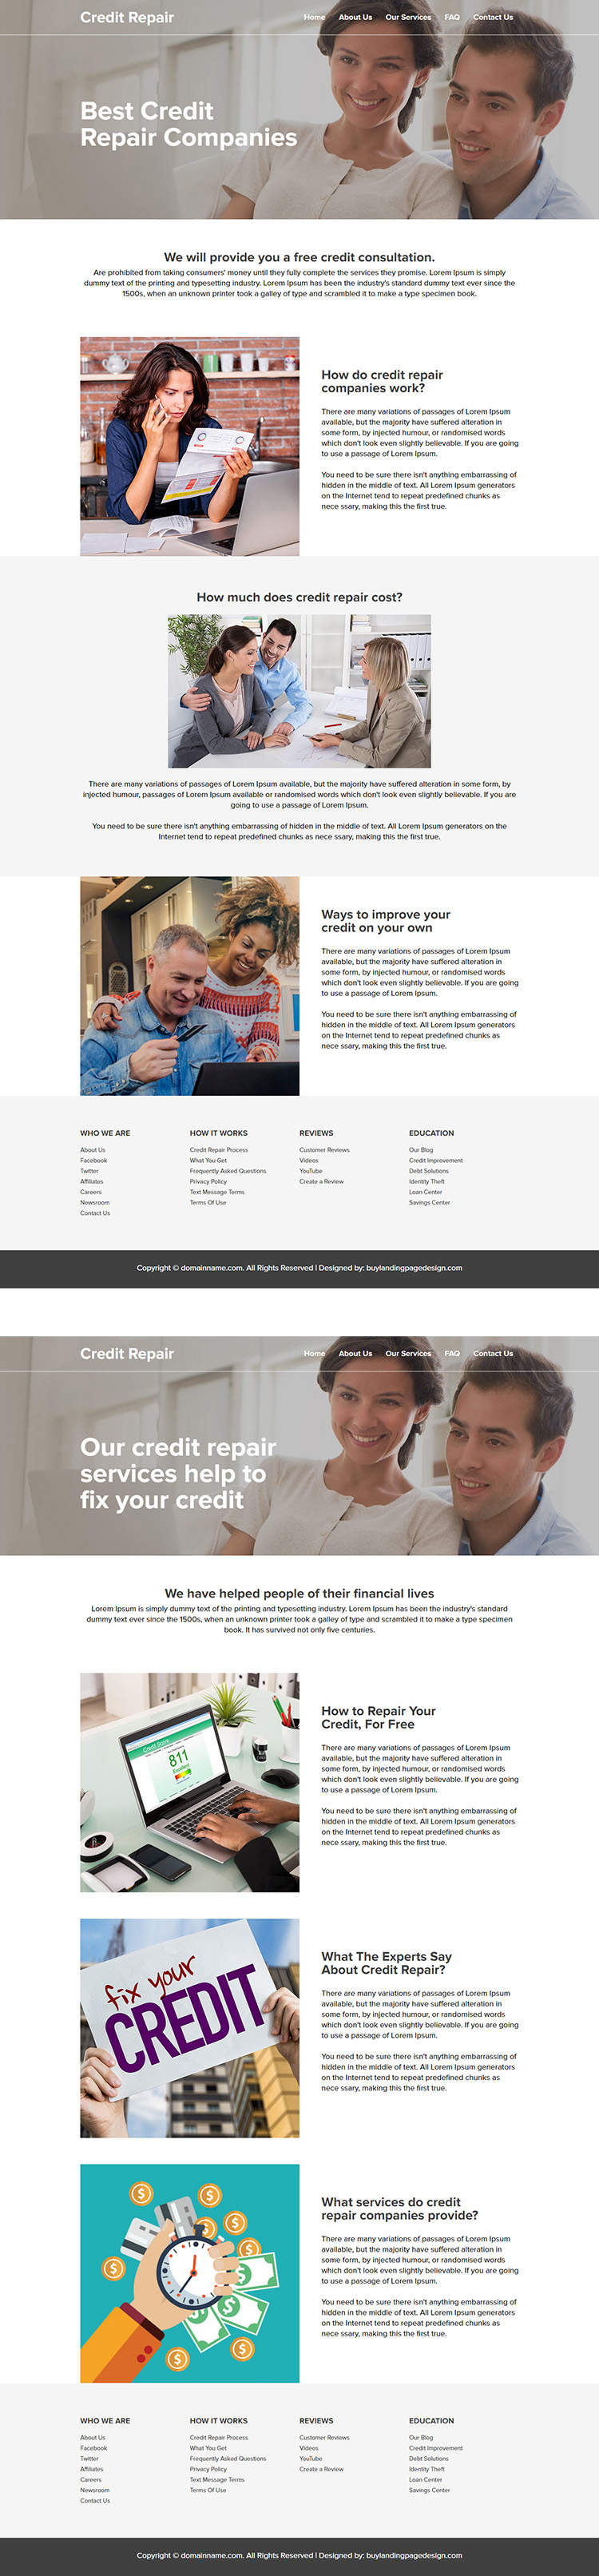 leading credit repair company responsive website design